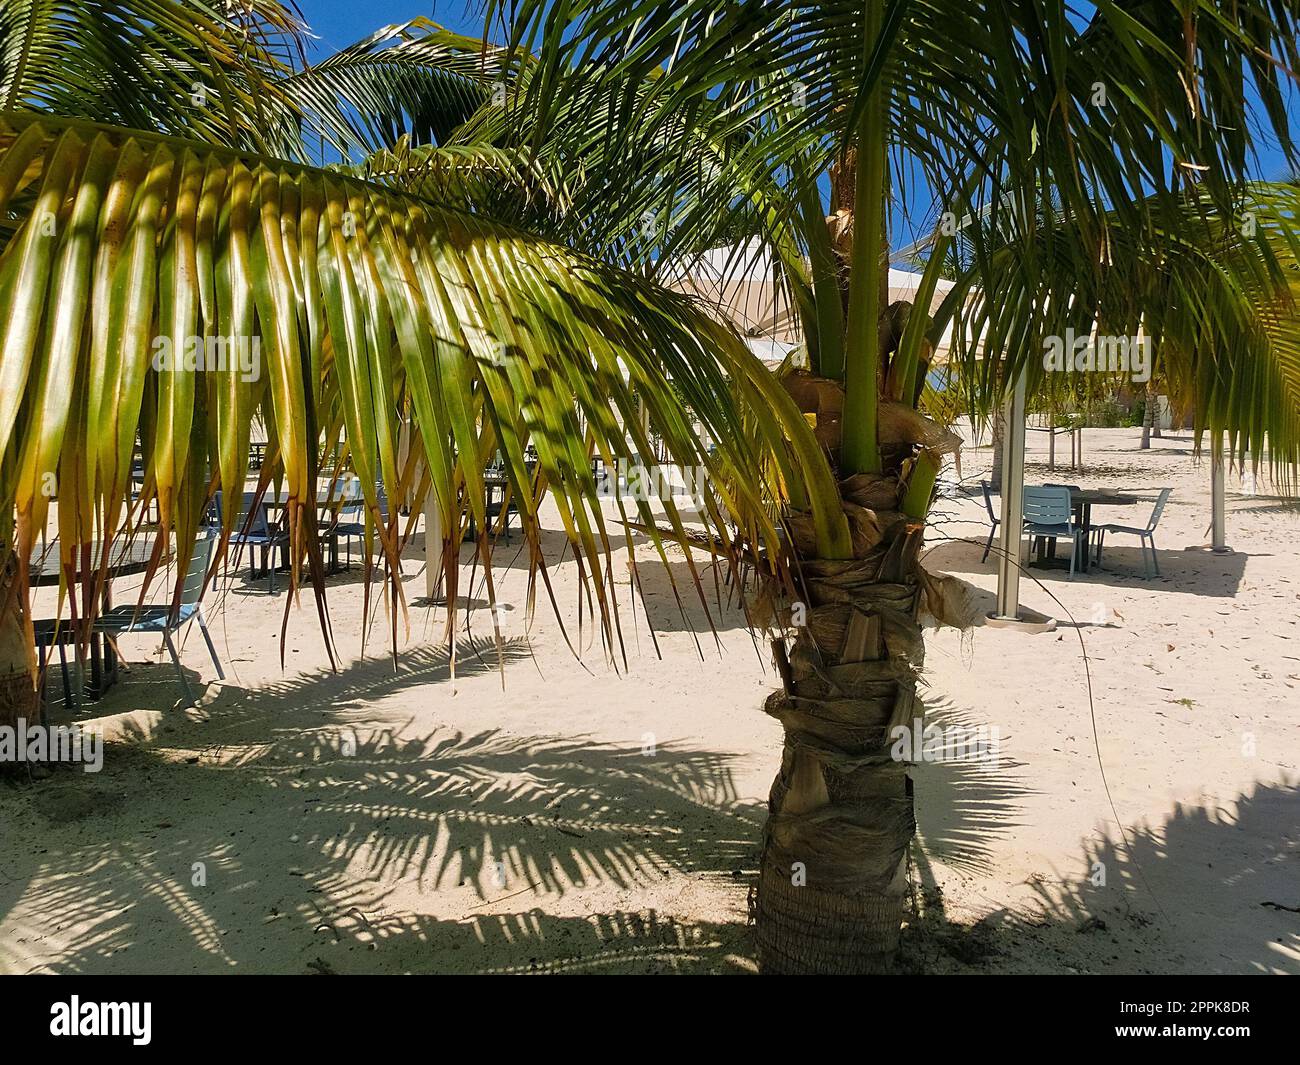 La spiaggia di sabbia bianca sull'isola di Ocean Cay Foto Stock